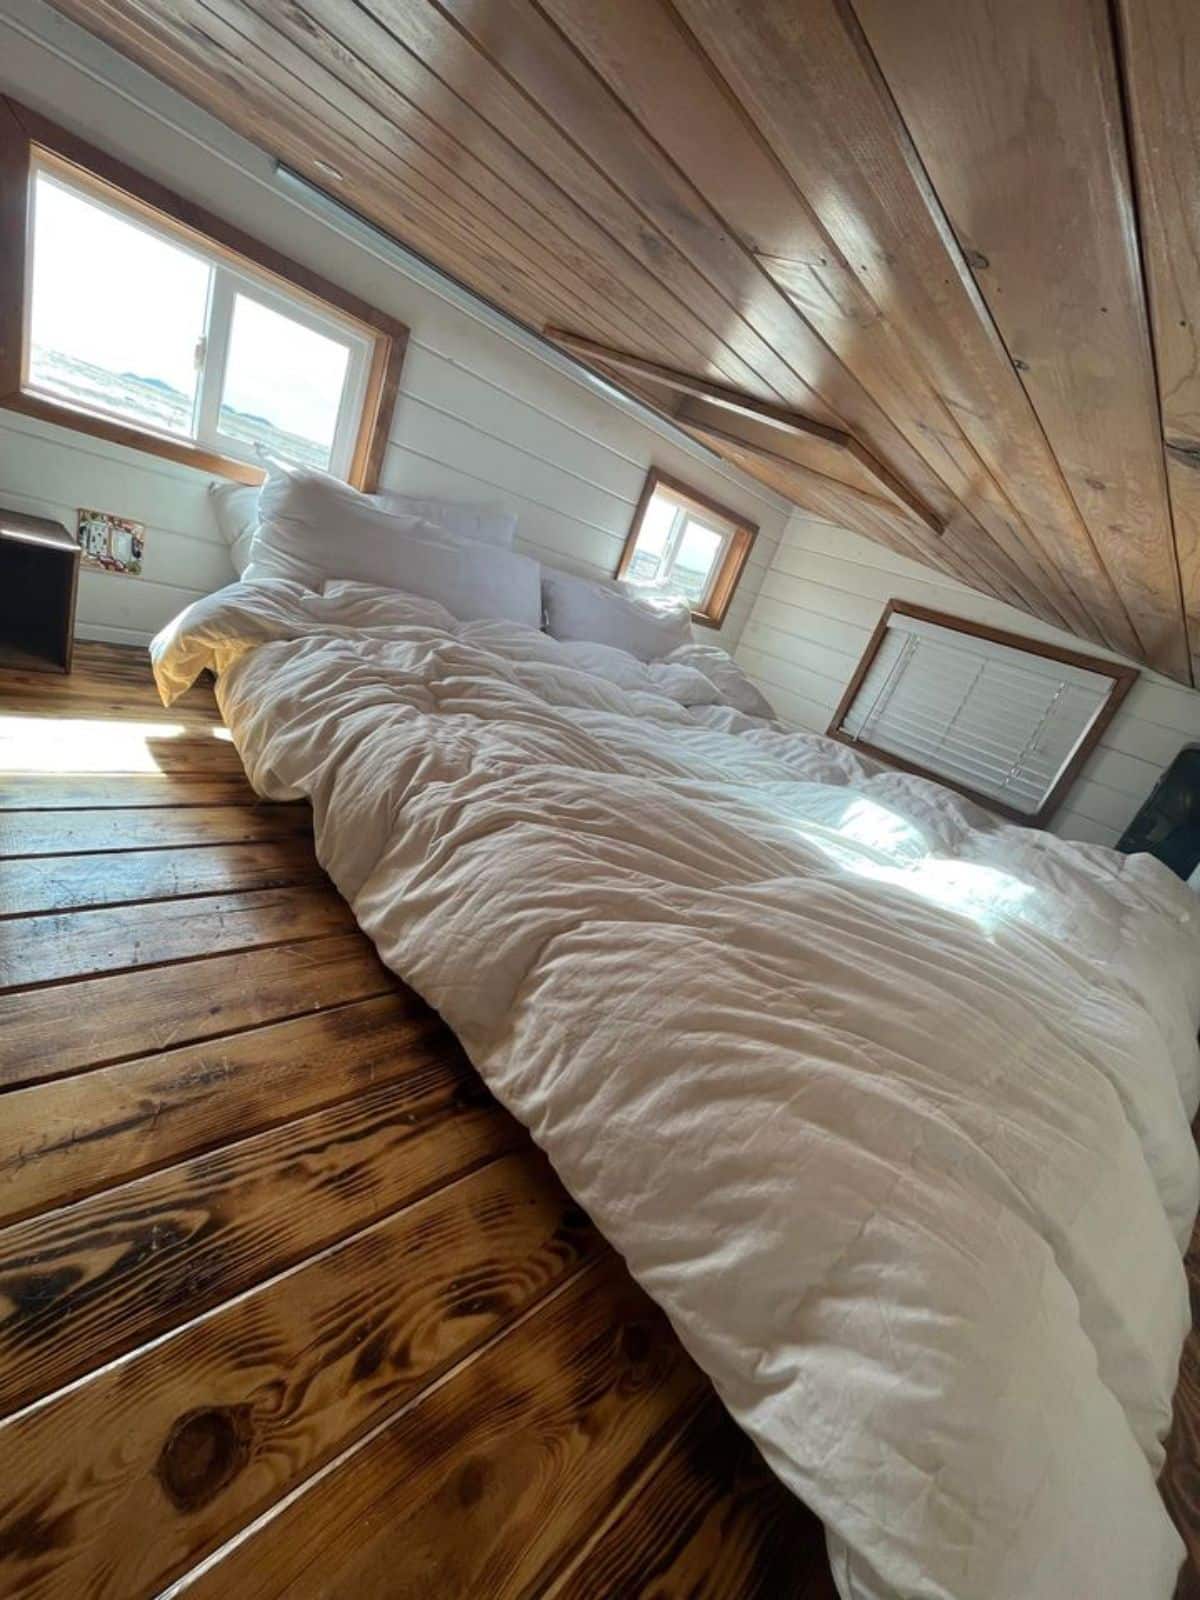 super cozy mattress in bedroom area